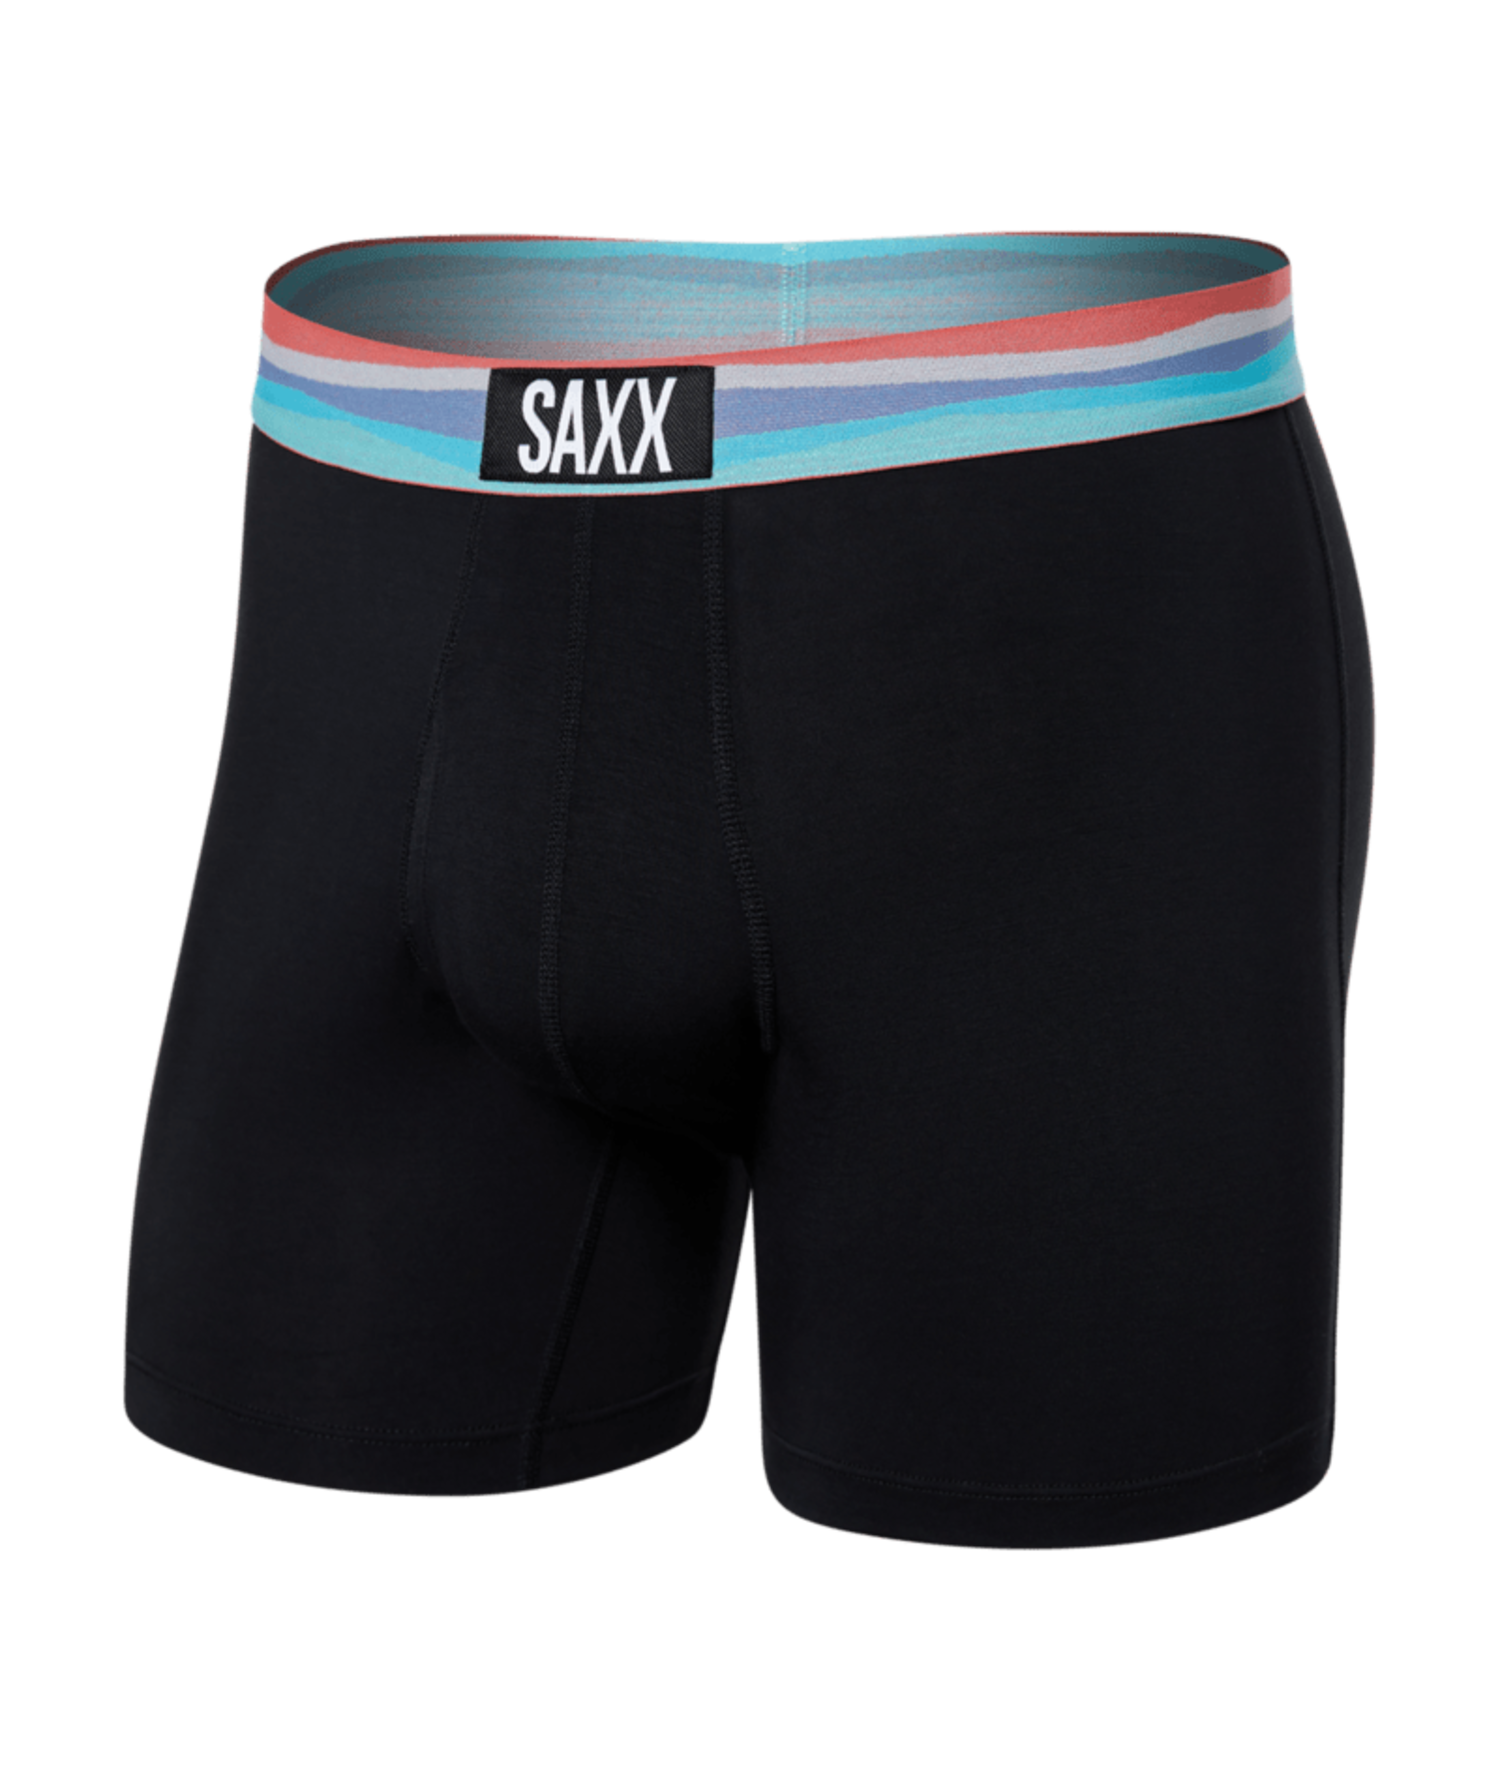 SAXX Ultra Super Soft